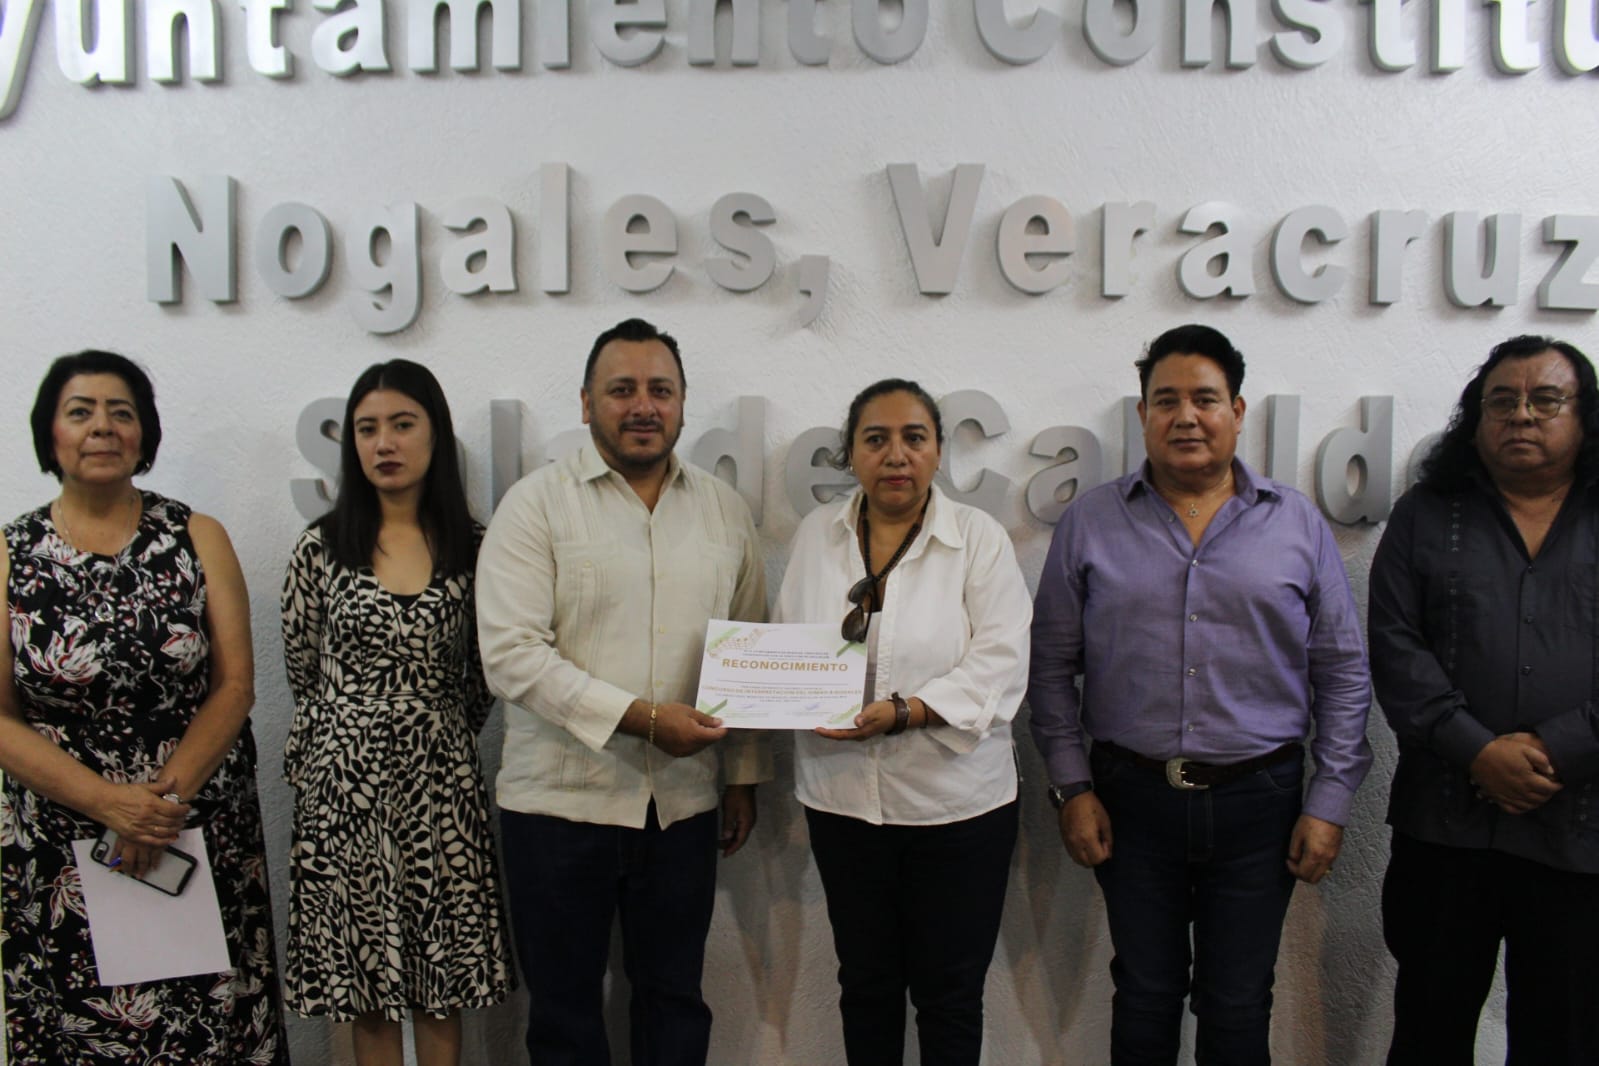 Realizan concurso de interpretación del Himno a Nogales, Veracruz 